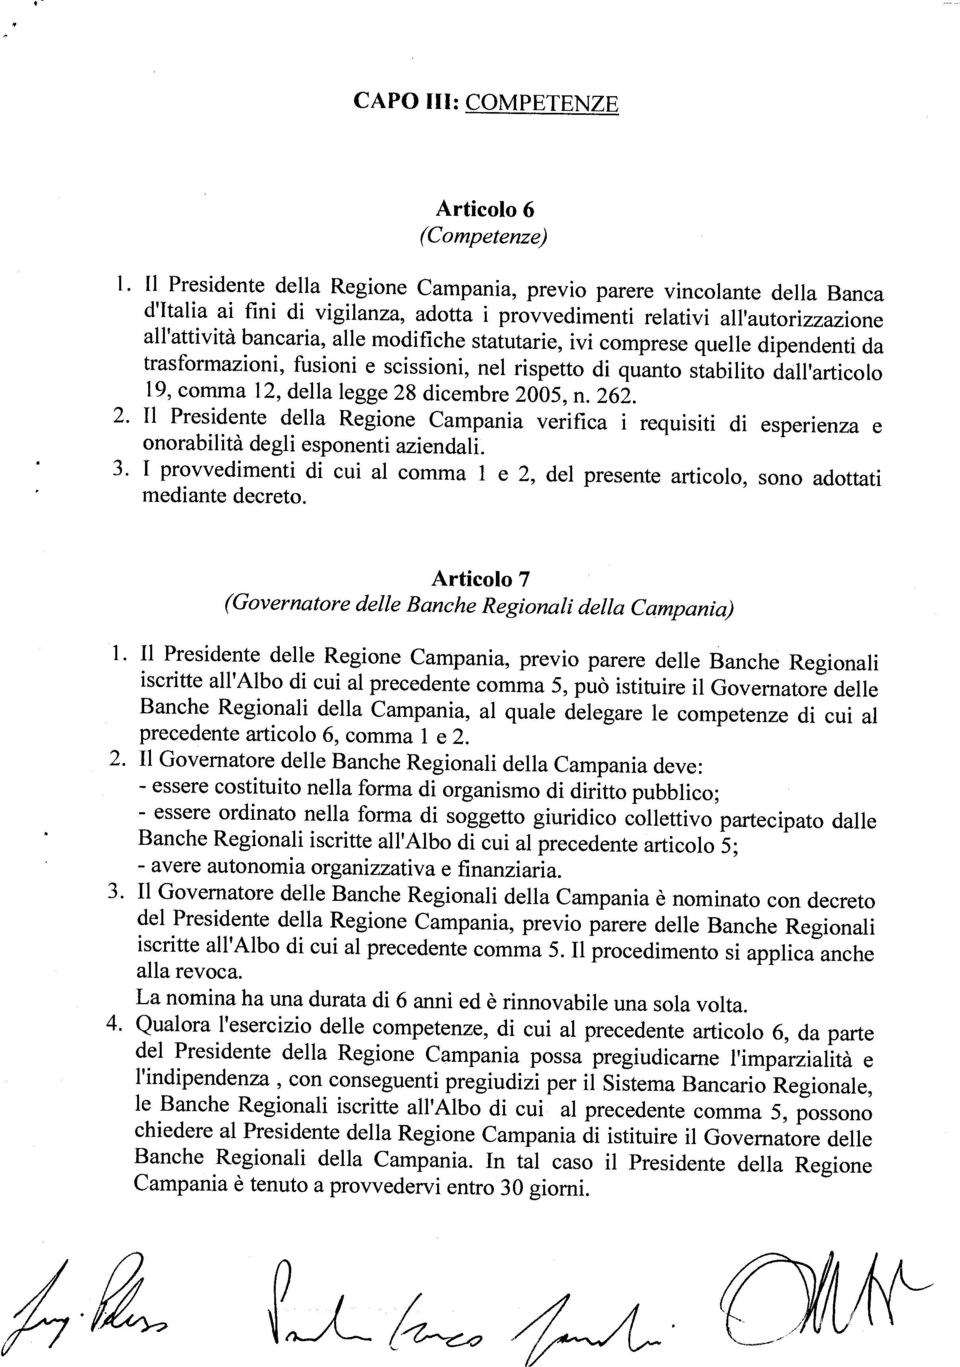 Campania è tenuto a provvedervi entro 30 giorni. Banche Regionali della Campania, al quale delegare le competenze di cui al precedente articolo 6, comma i e 2.